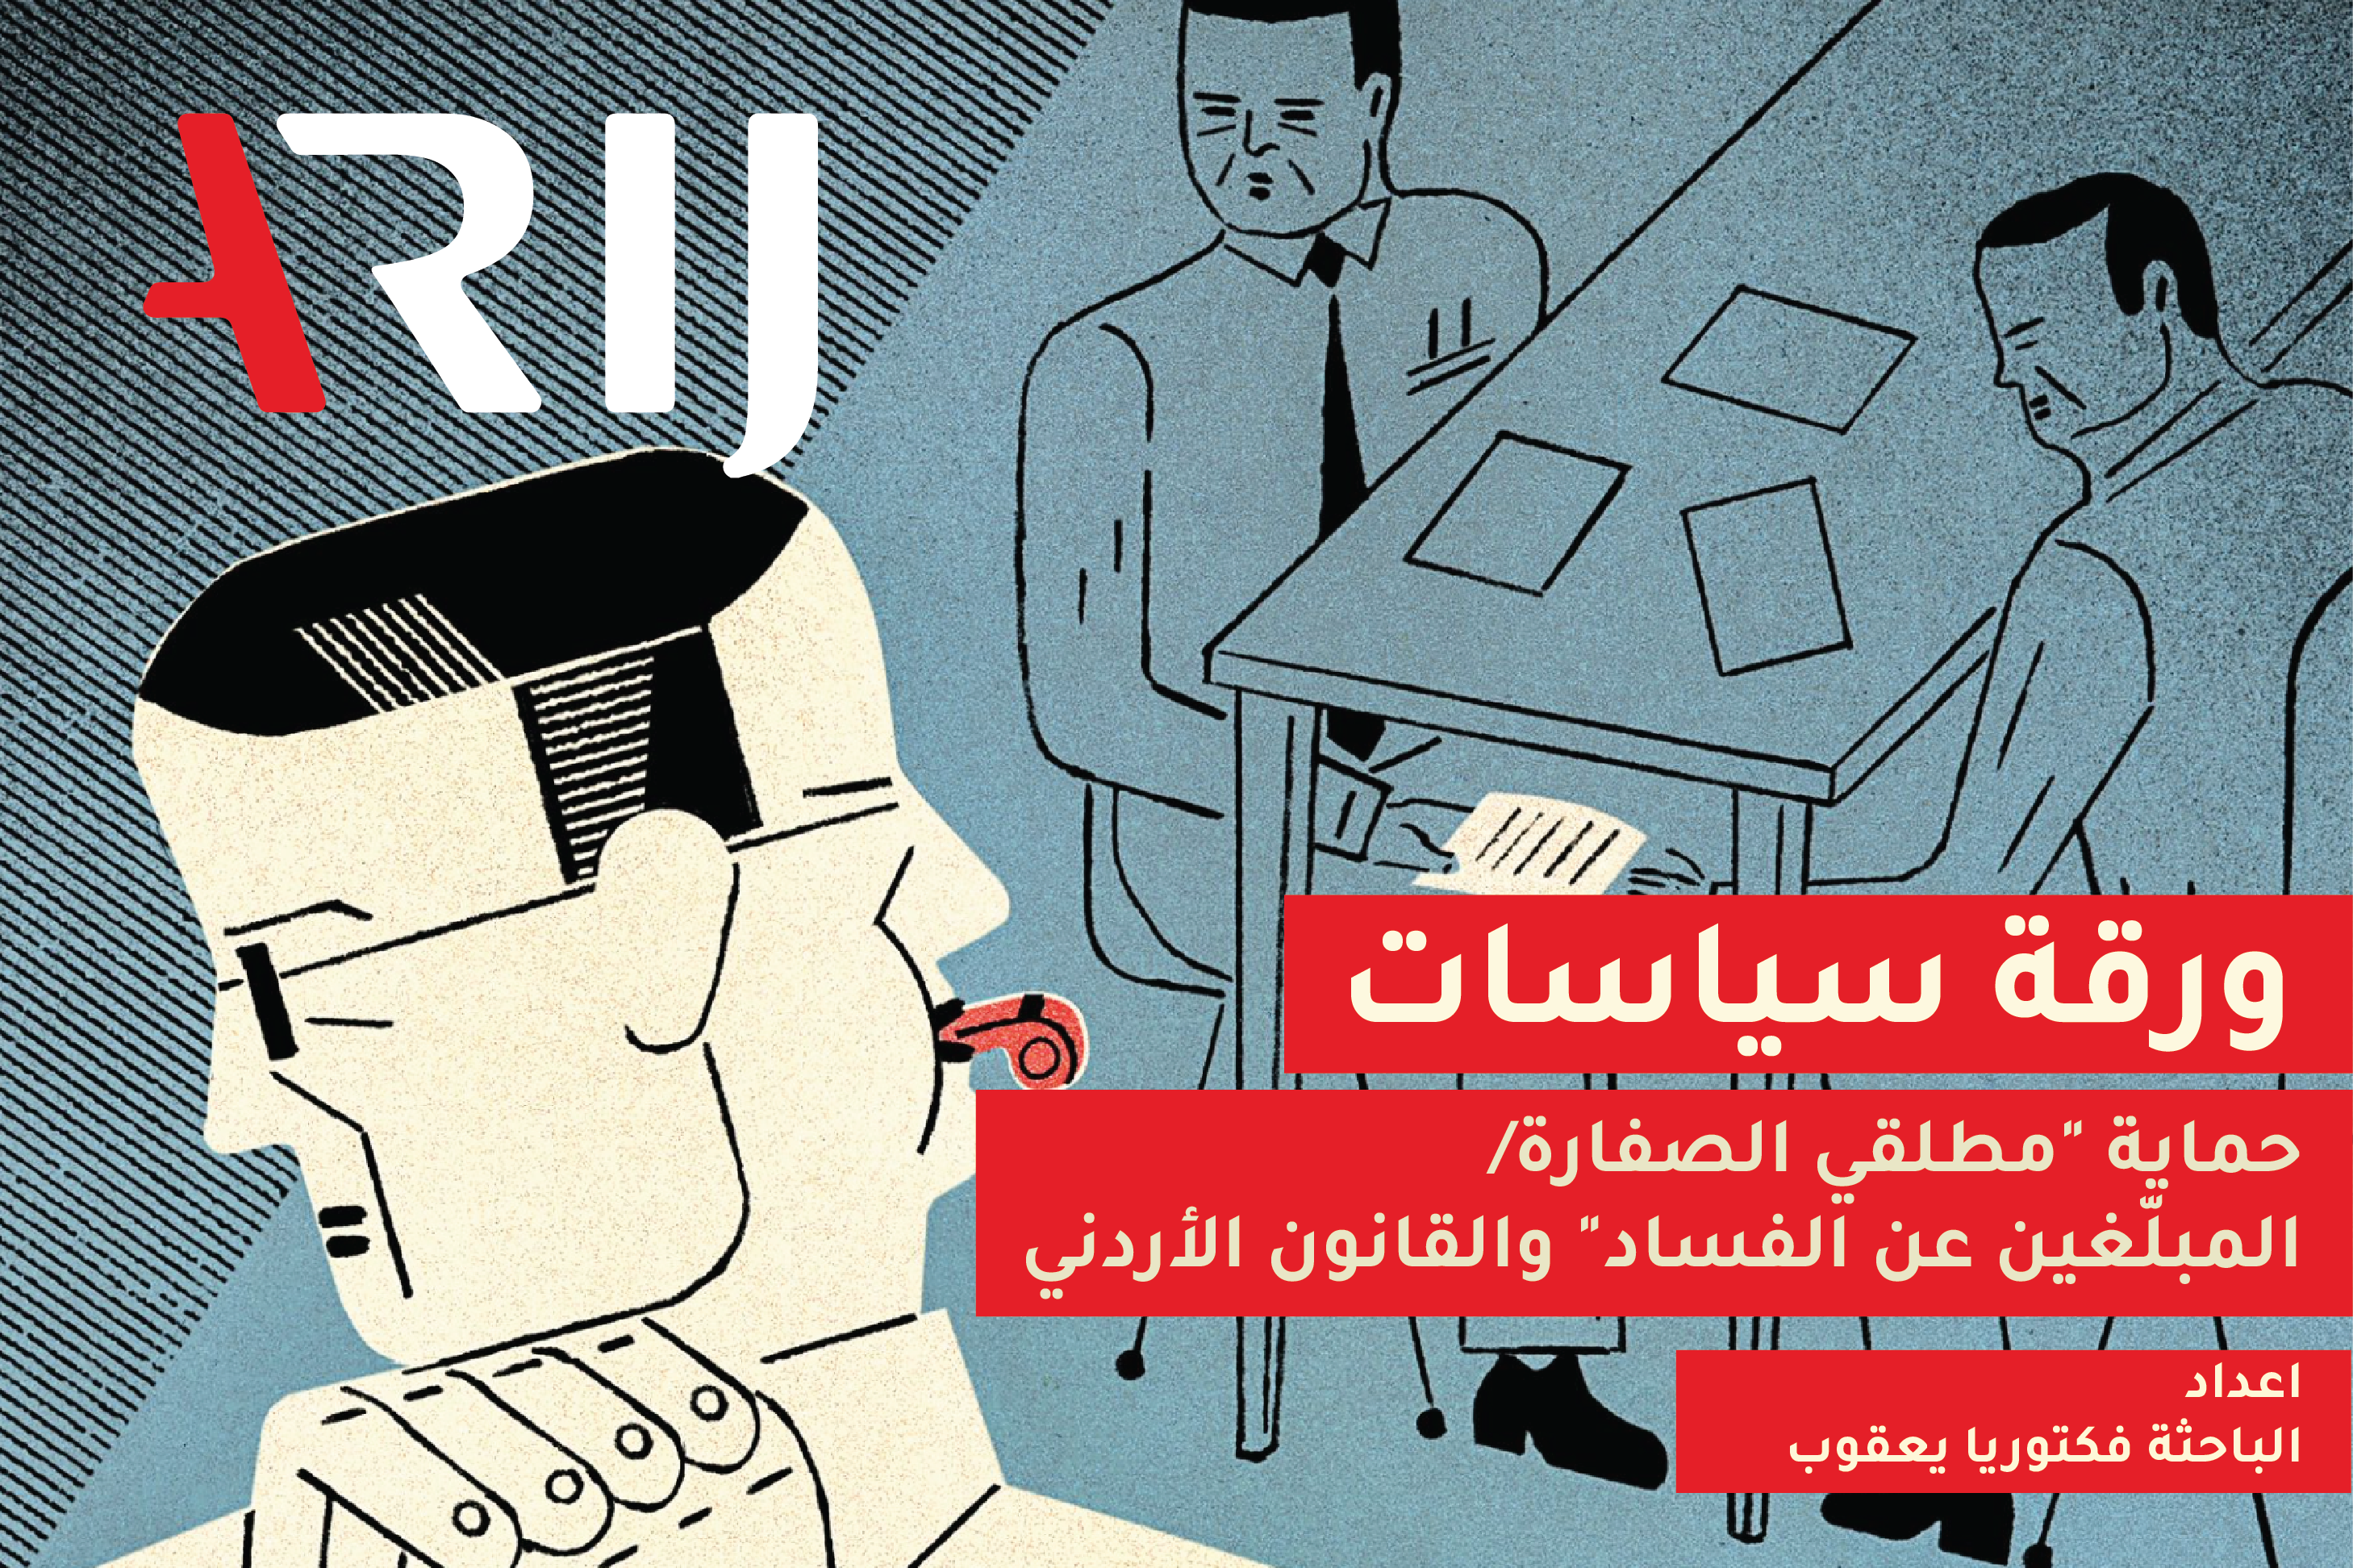 حماية "مطلقي الصفارة/ المبلّغين عن الفساد" والقانون الأردني